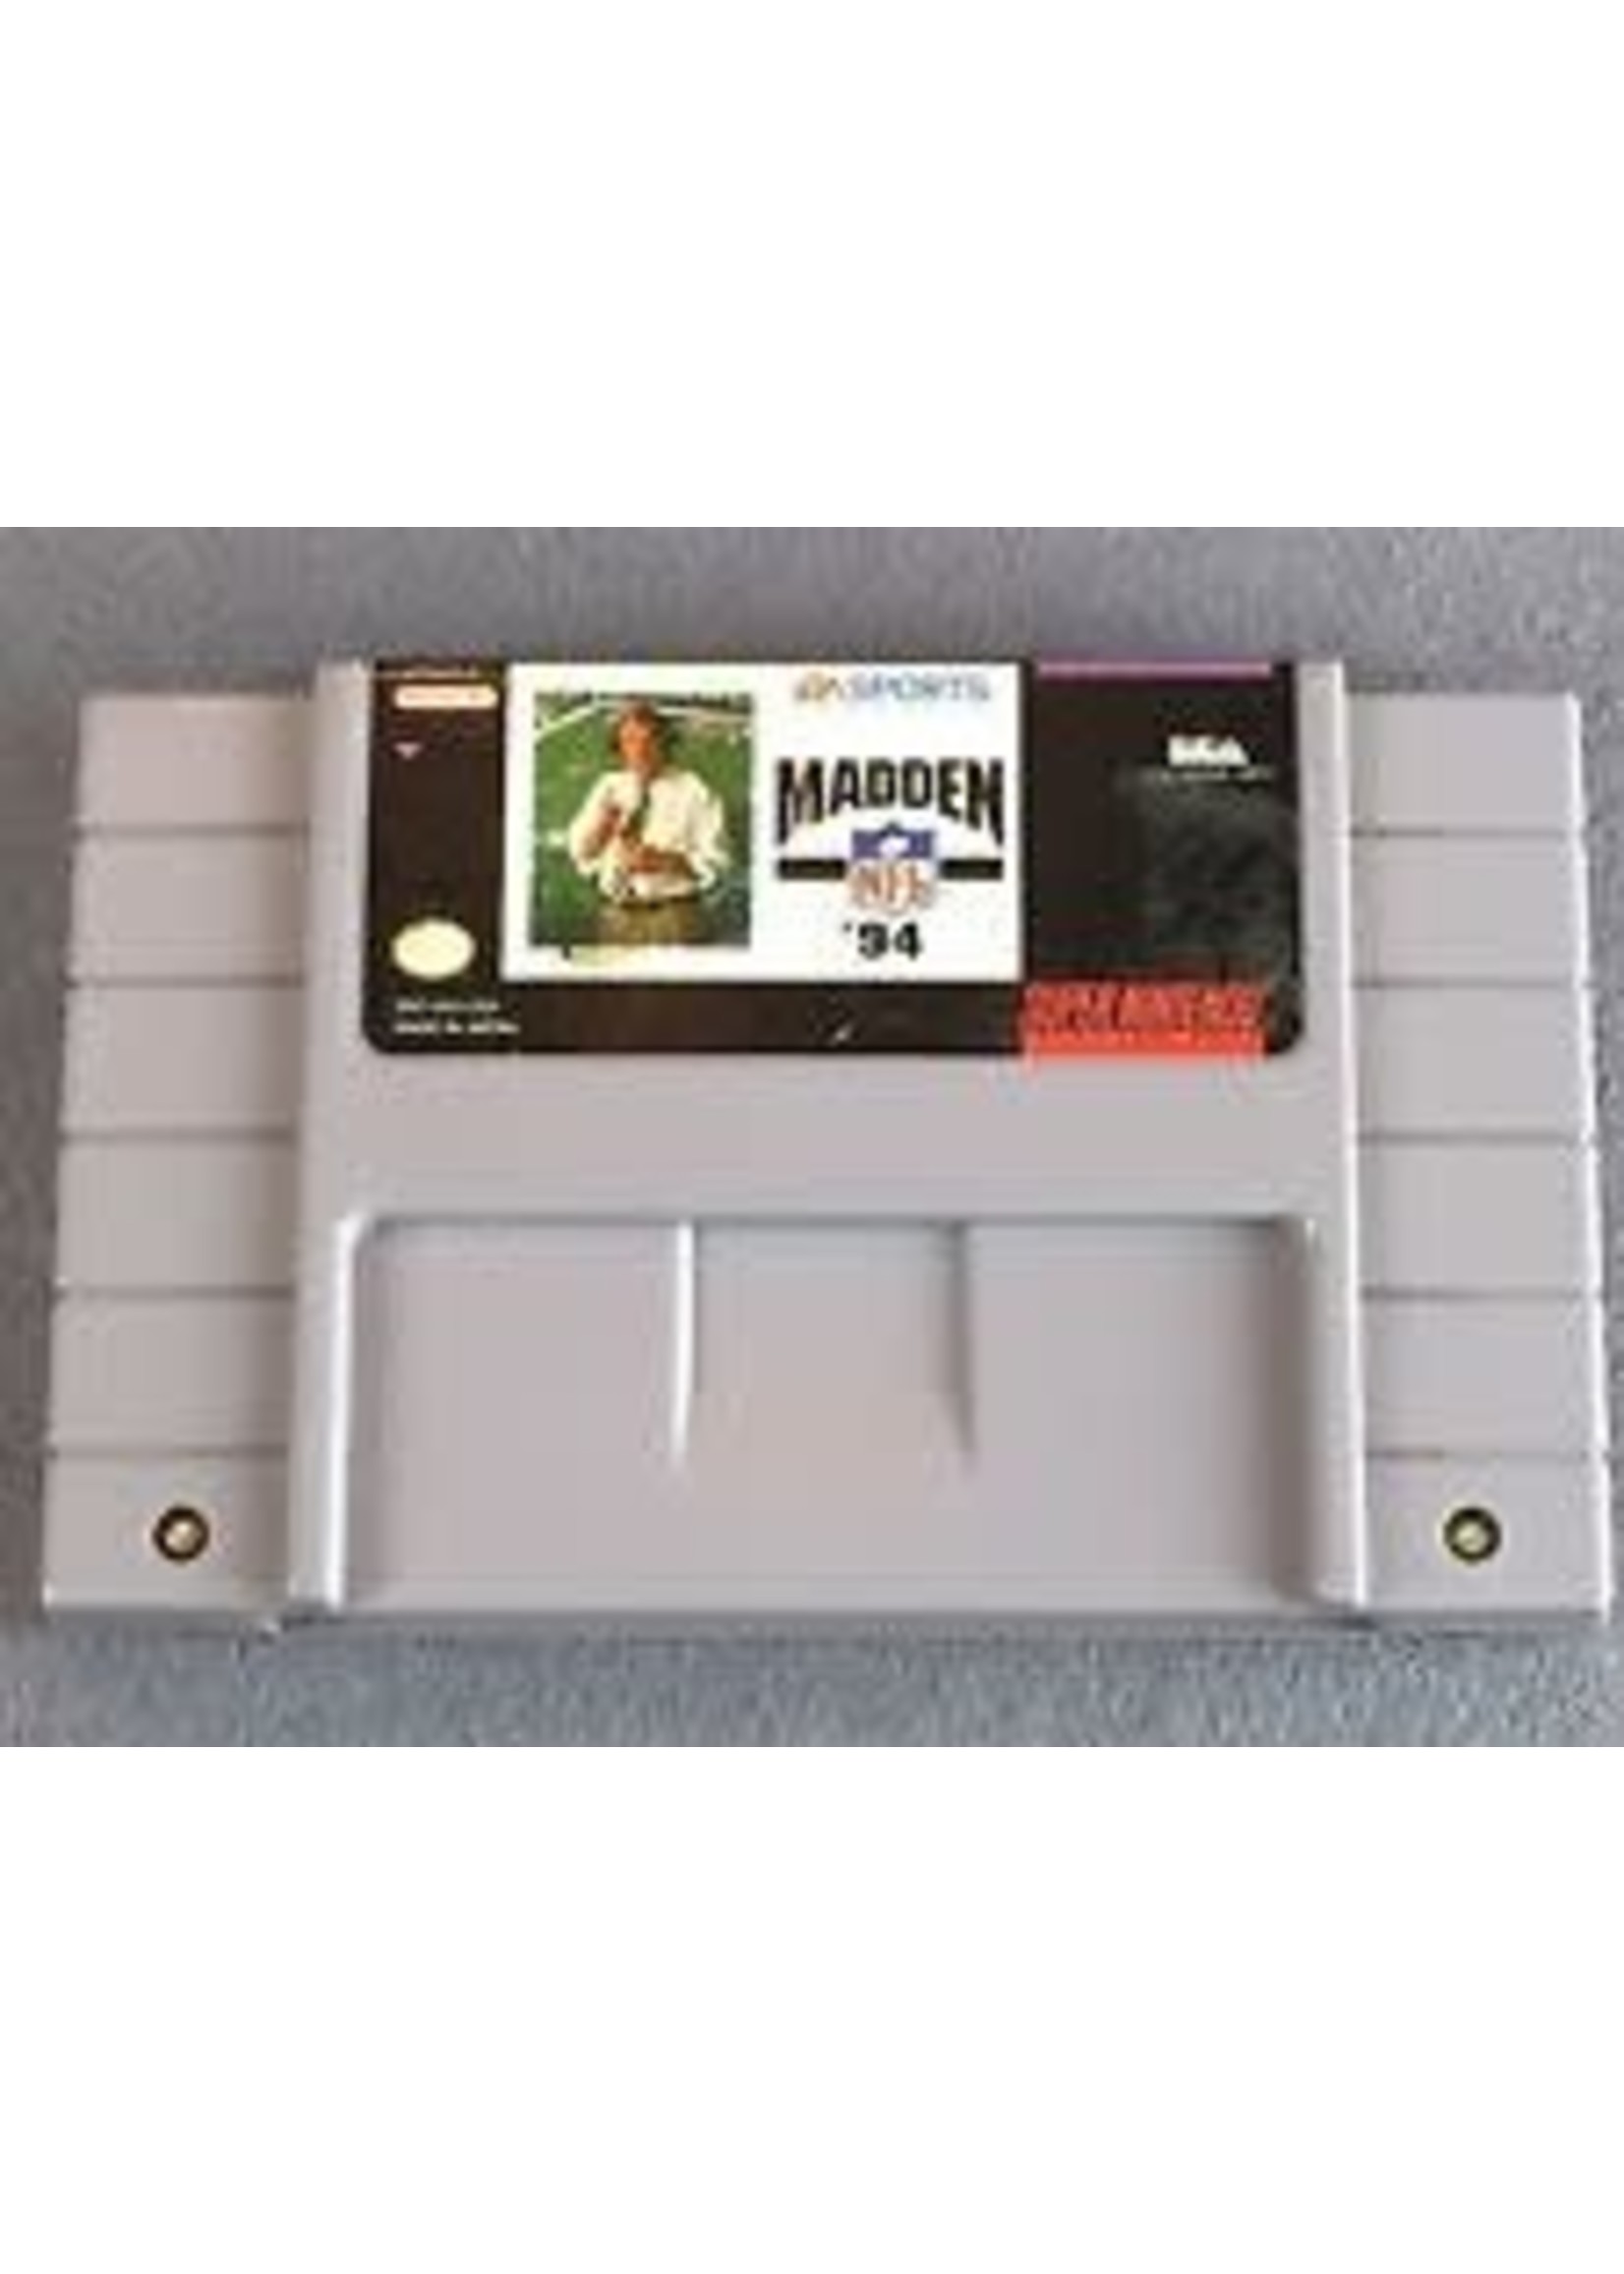 Nintendo Super Nintendo (SNES) Madden NFL '94